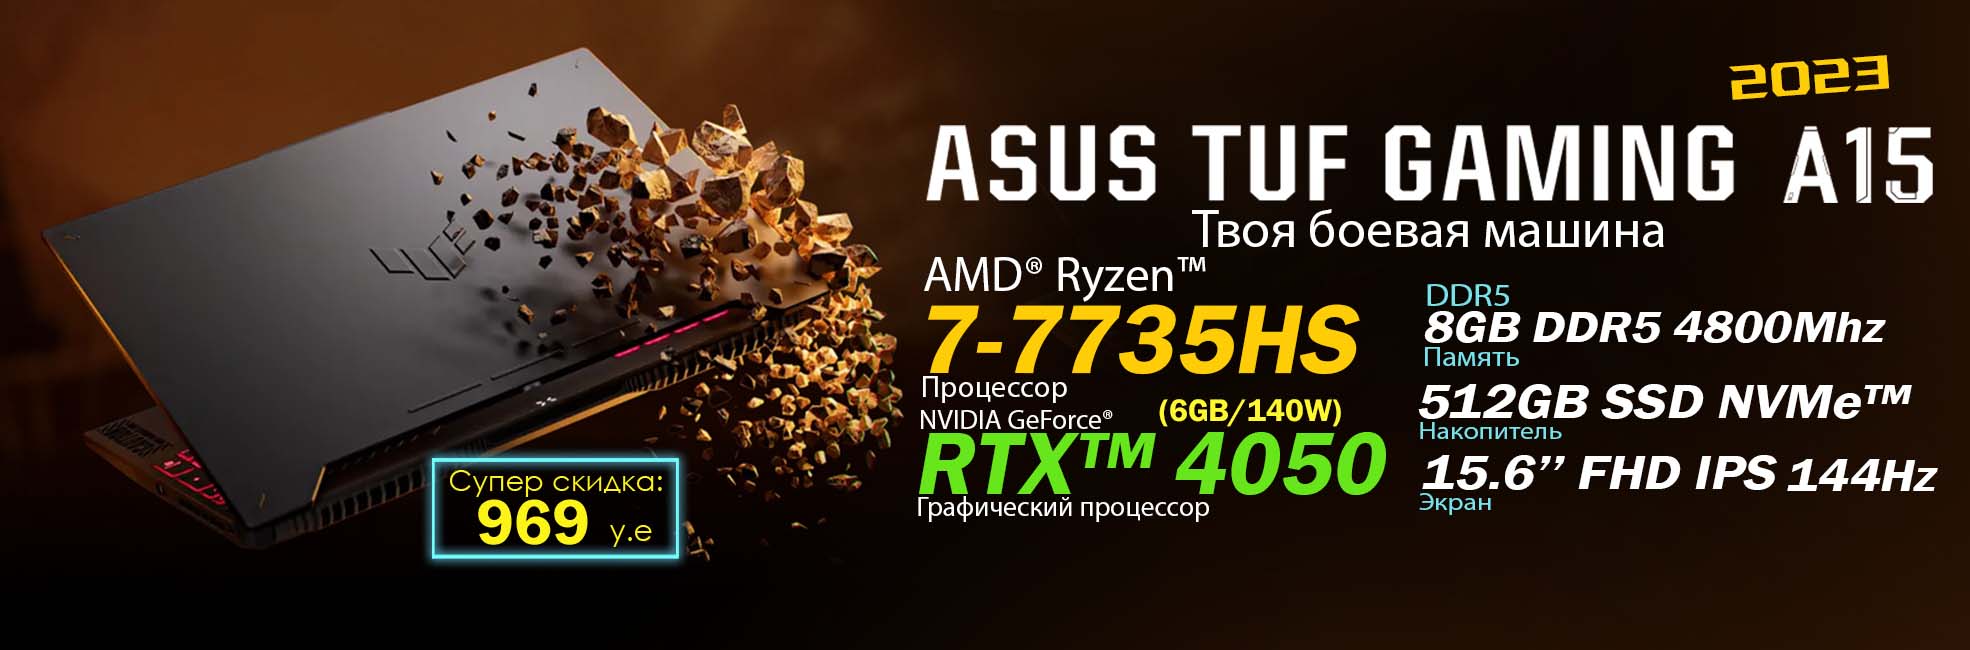 TUF A15 R7 4050 Asus Tuf Gaming